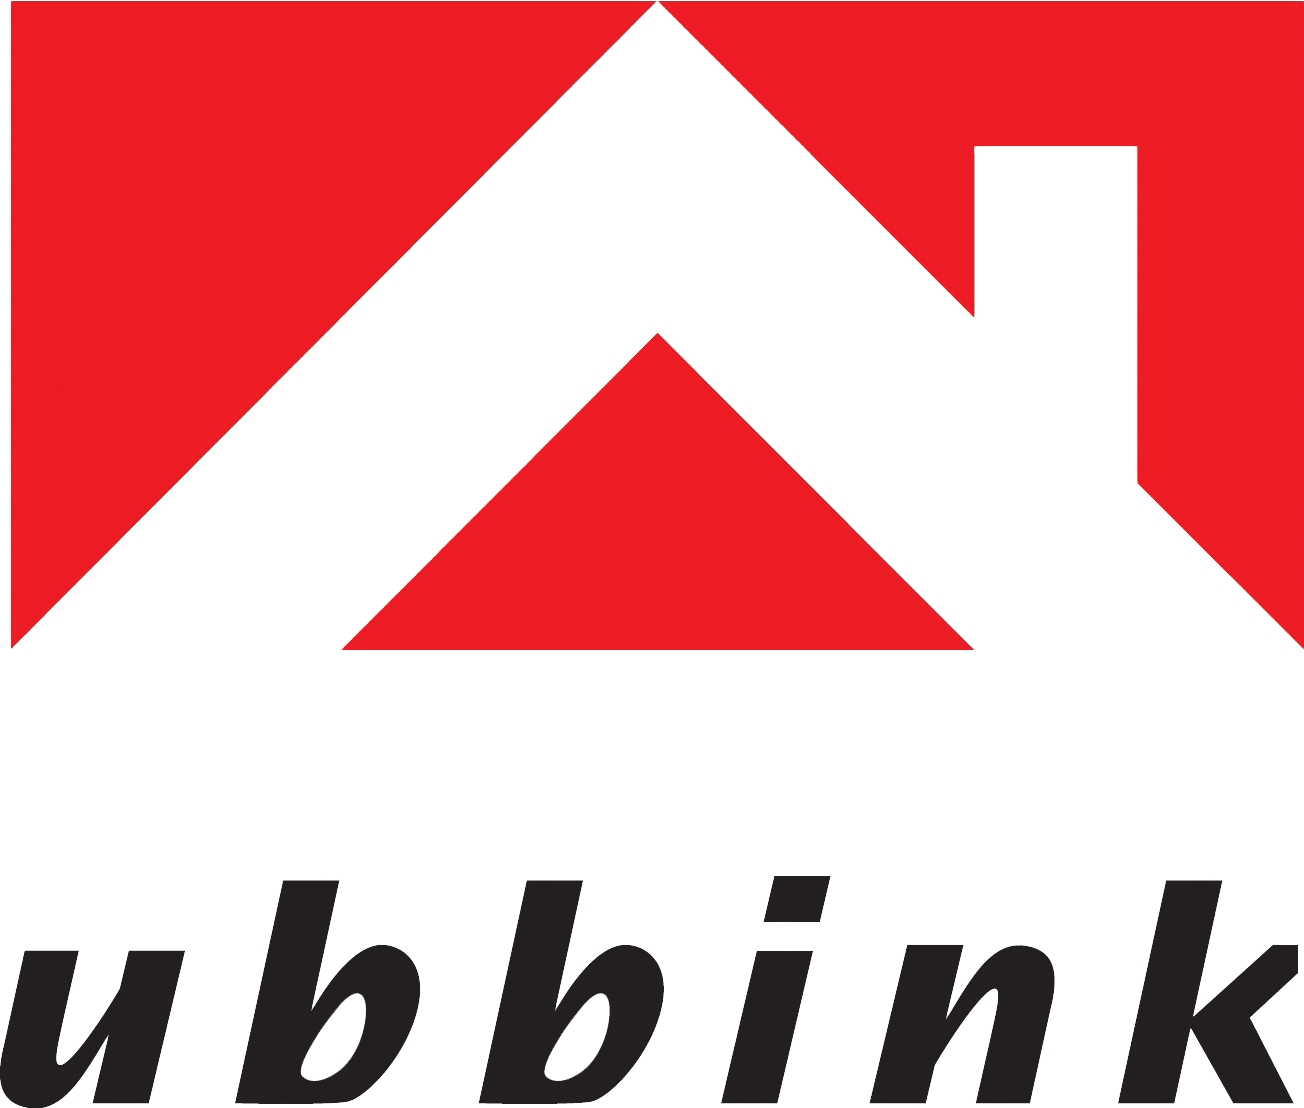 Logo Ubbink